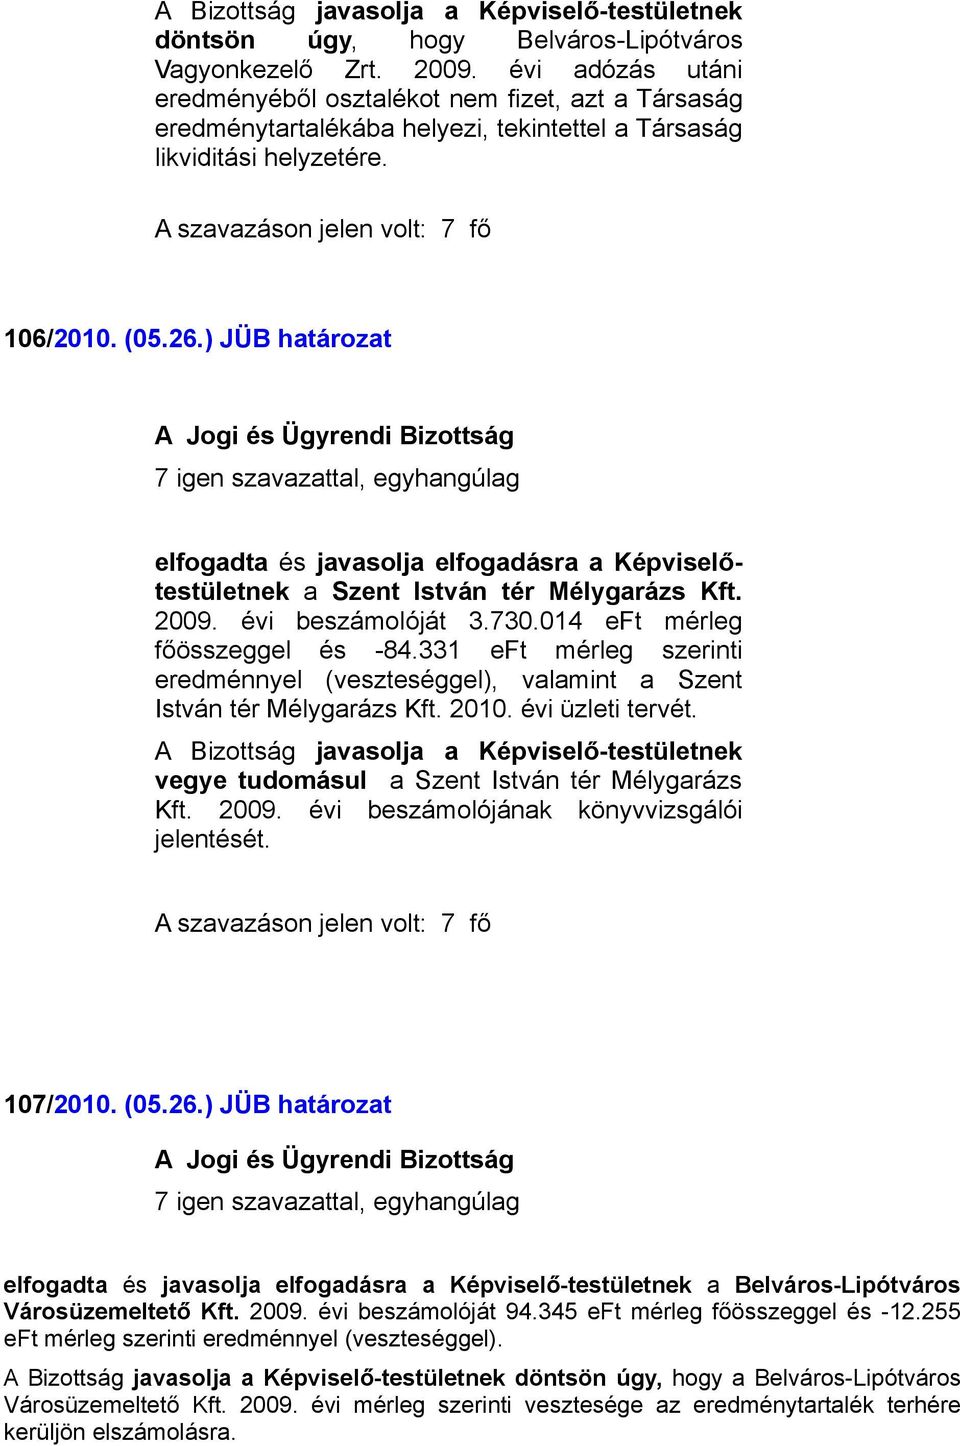 ) JÜB határozat a Szent István tér Mélygarázs Kft. 2009. évi beszámolóját 3.730.014 eft mérleg főösszeggel és -84.